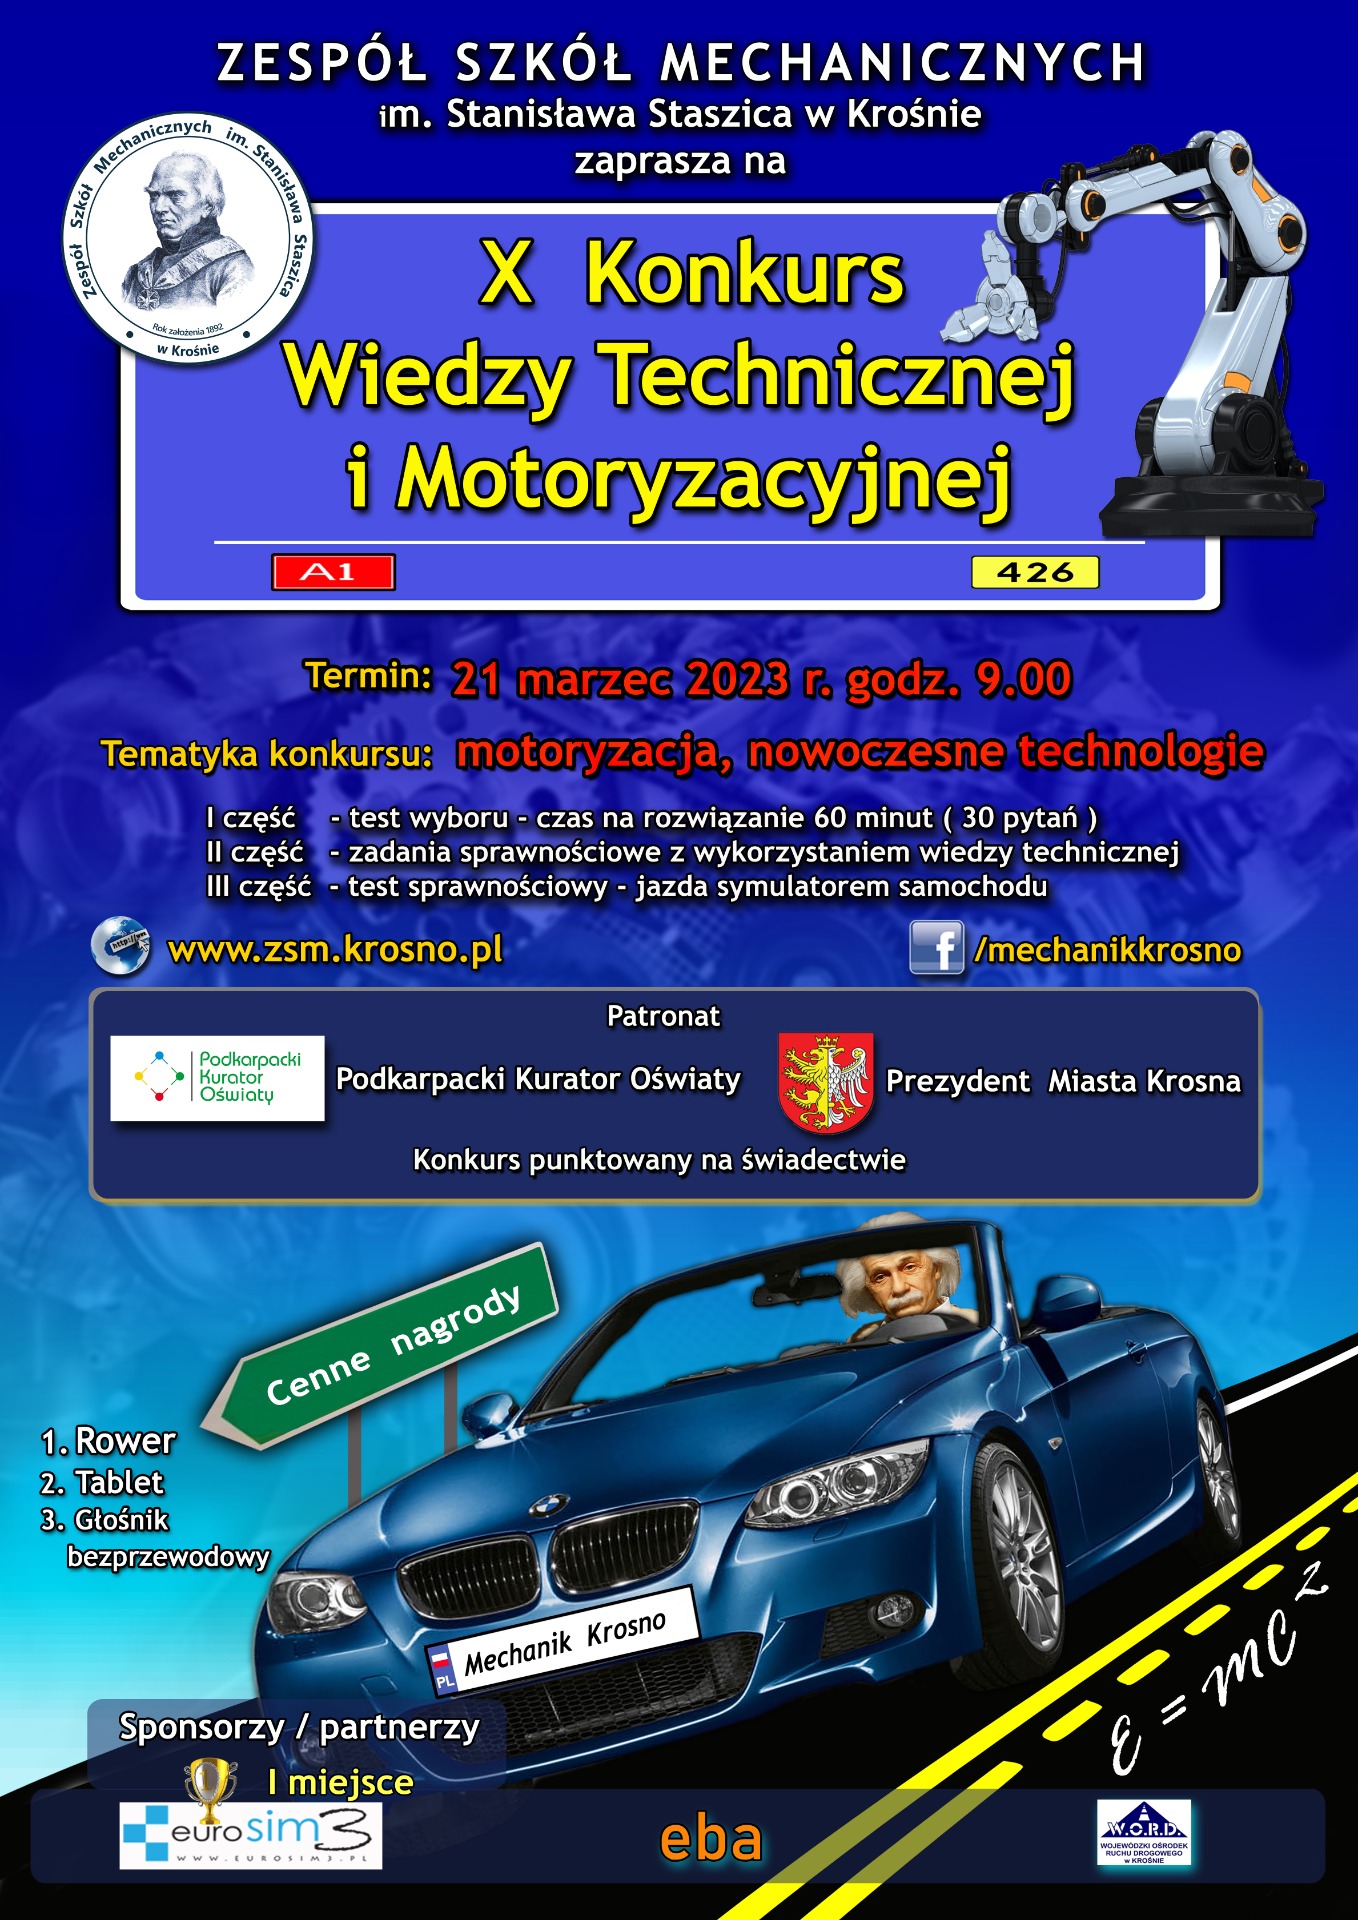 Zaproszenie do X Konkursu Wiedzy Technicznej i Motoryzacyjnej - Obrazek 3